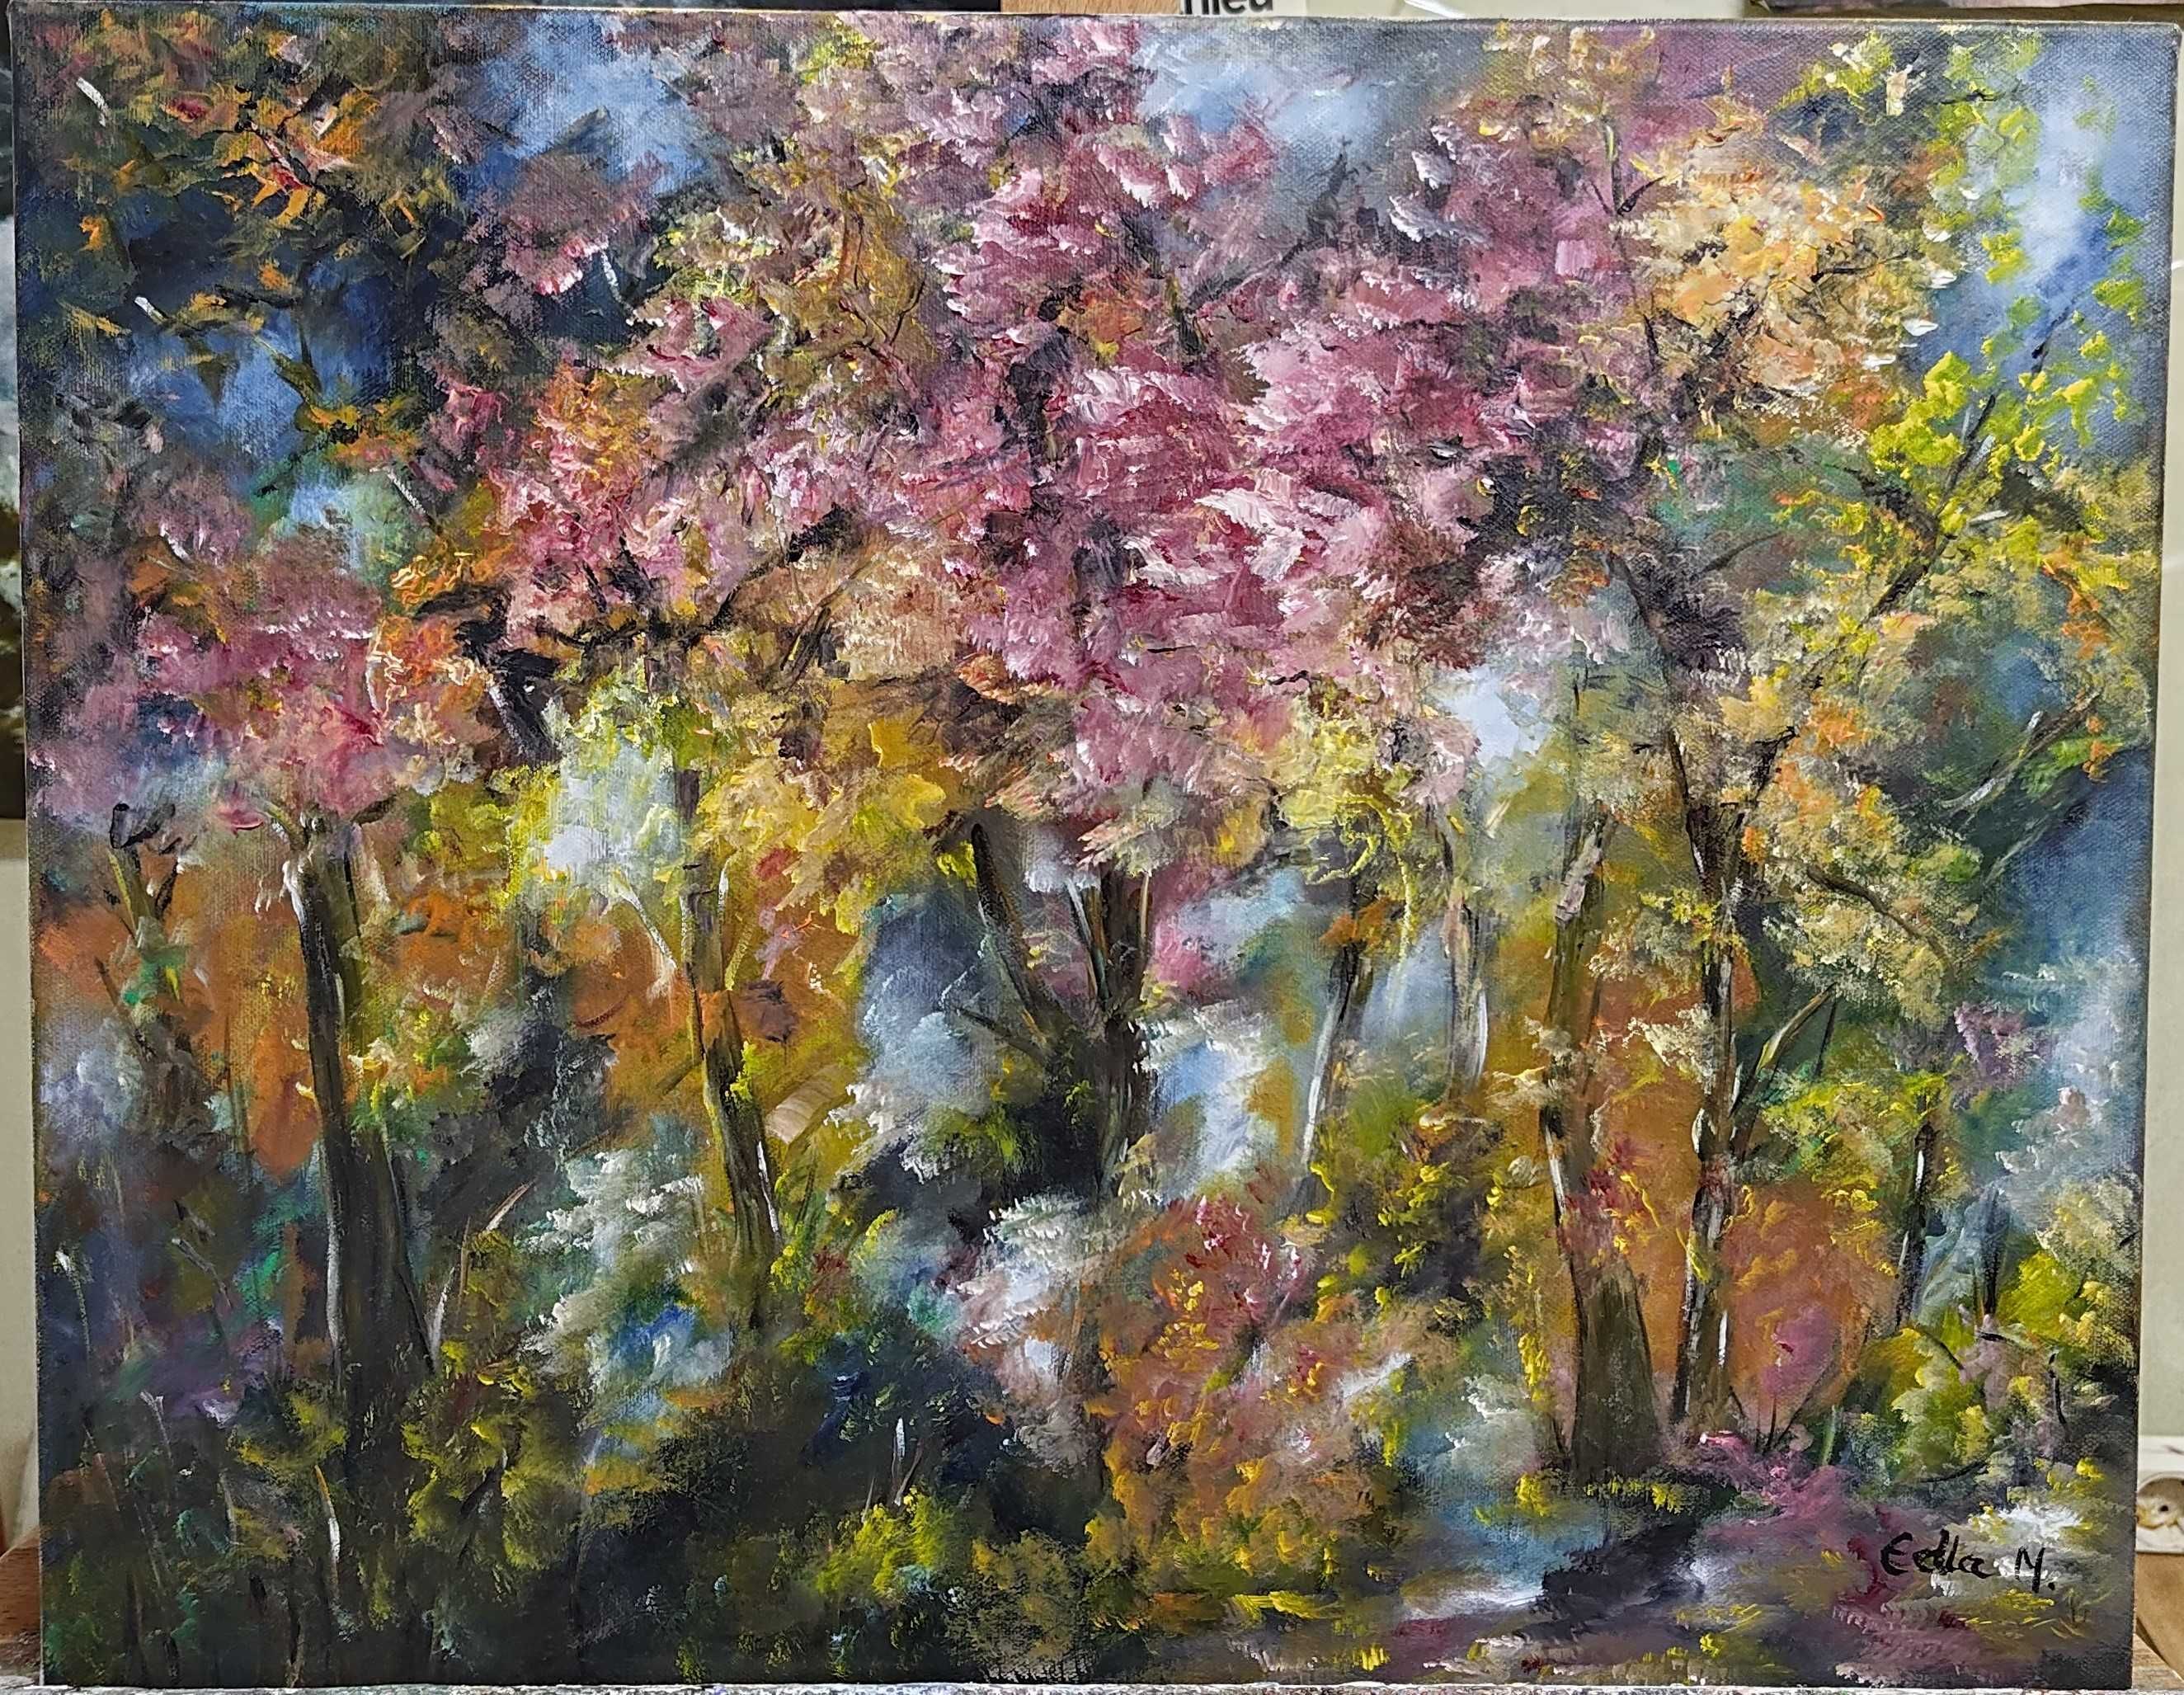 Quadro / Pintura a óleo sobre tela - "Harmony of Seasons"